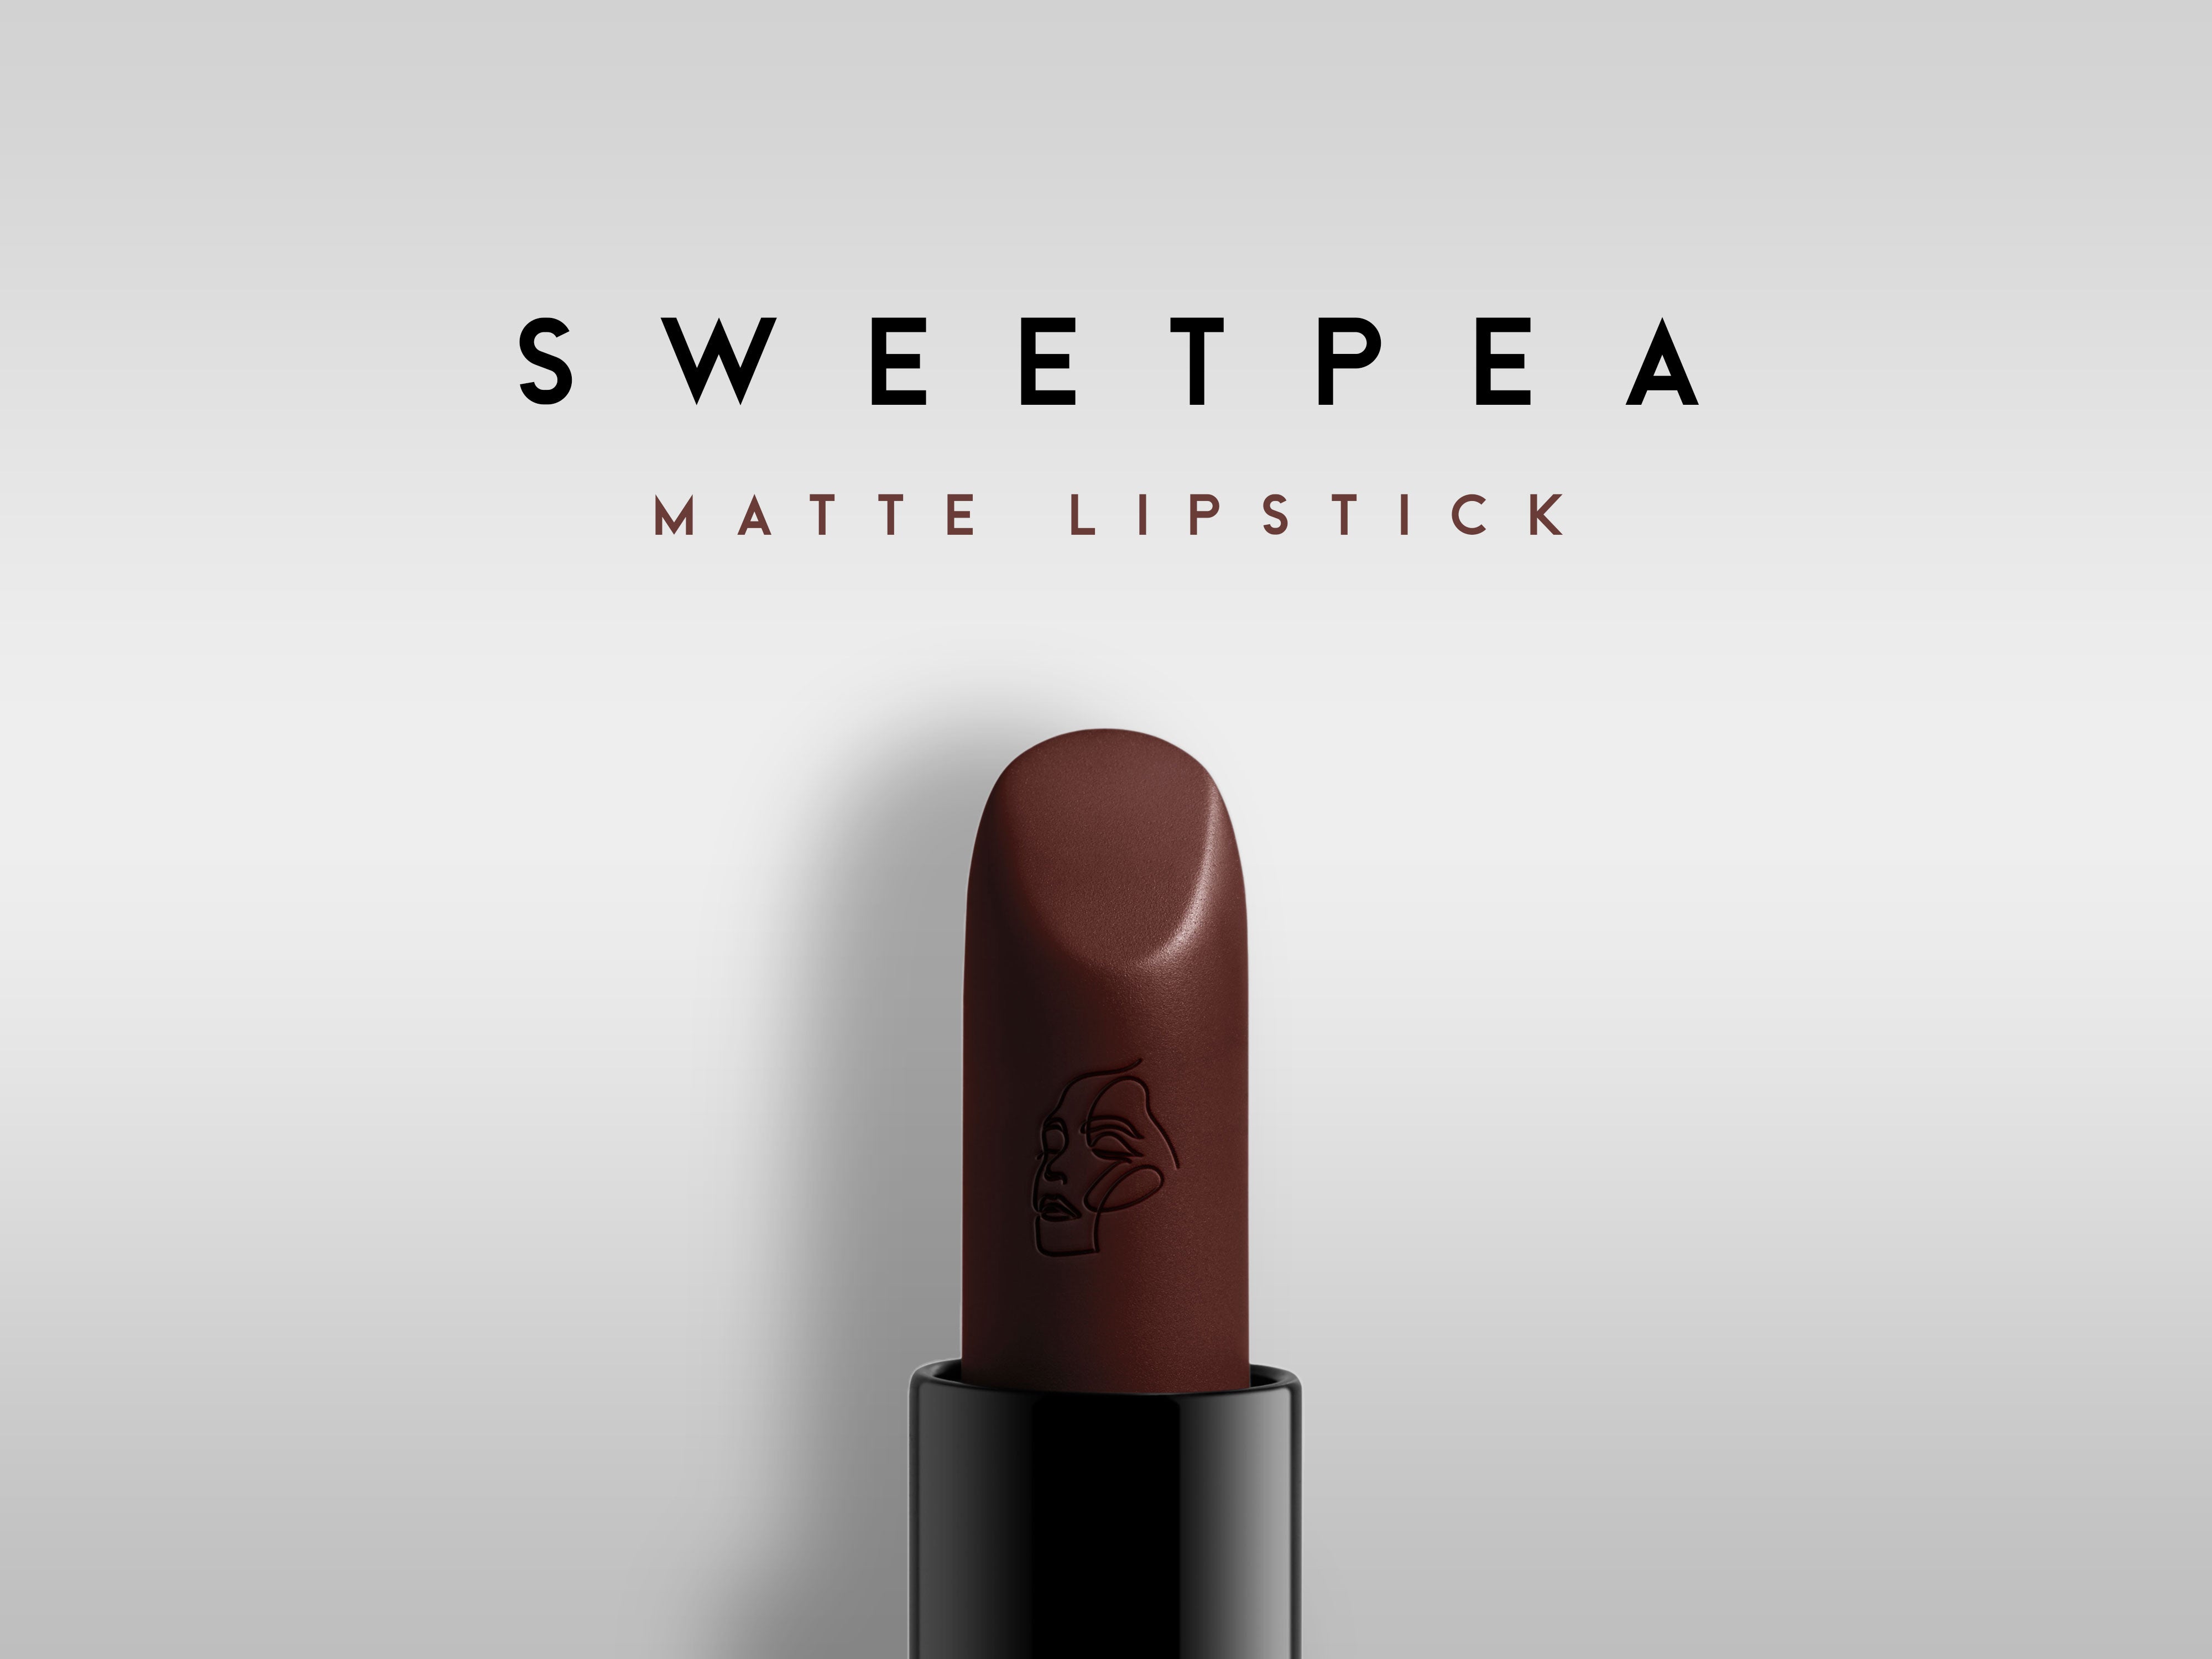 Cute Matte Lipstick